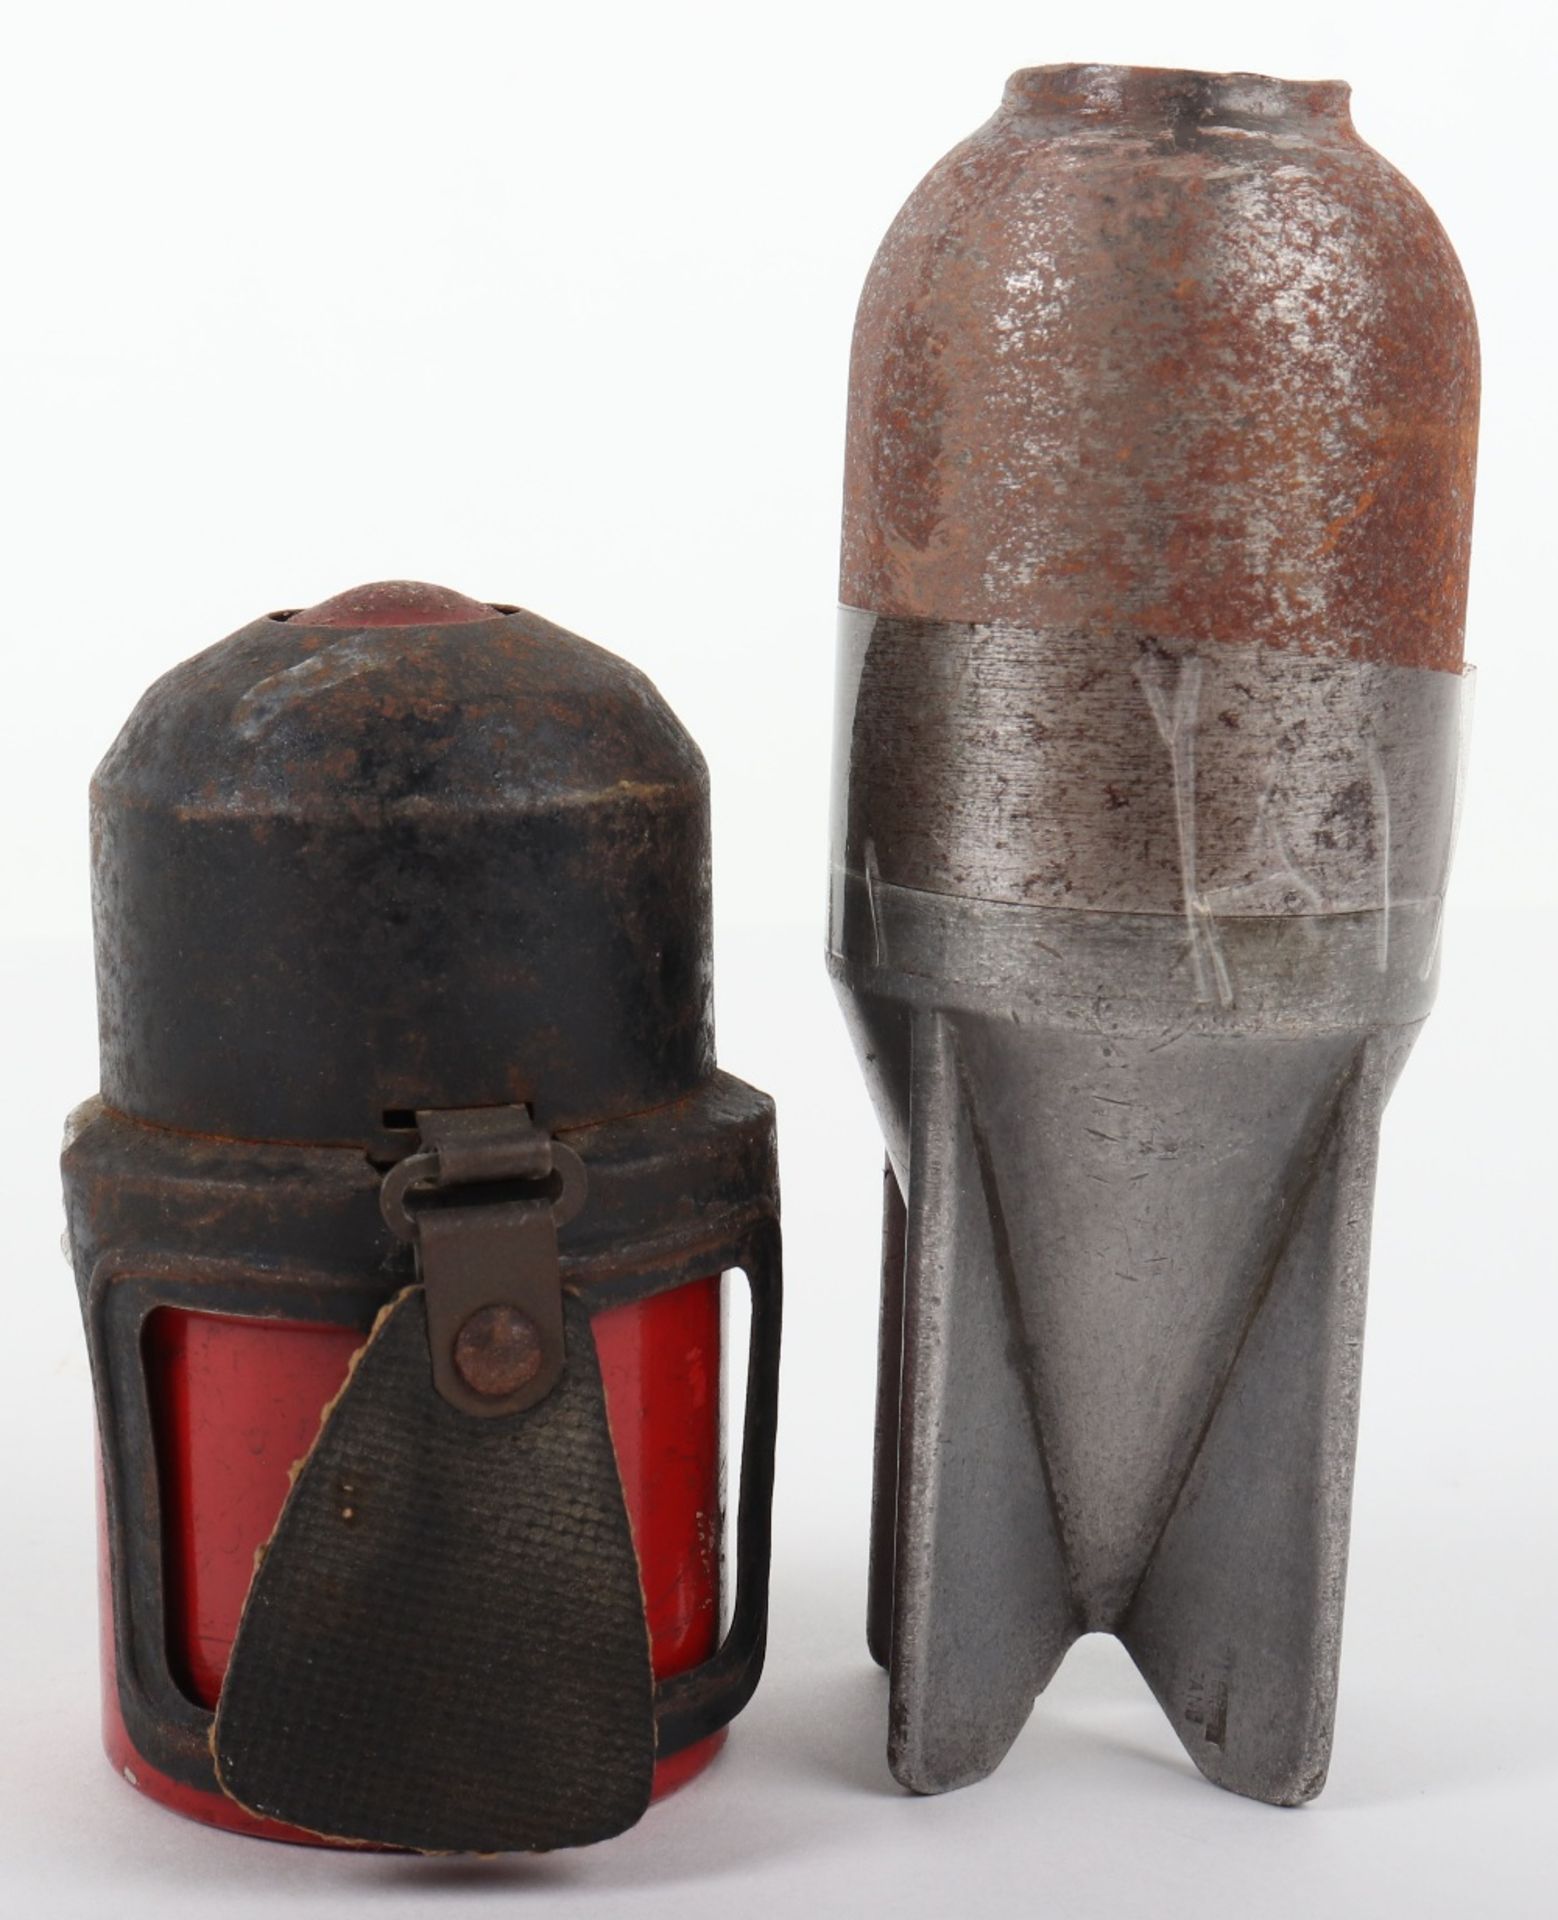 Inert WW2 Italian Model 35 “Red Devil” Hand Grenade - Image 2 of 4